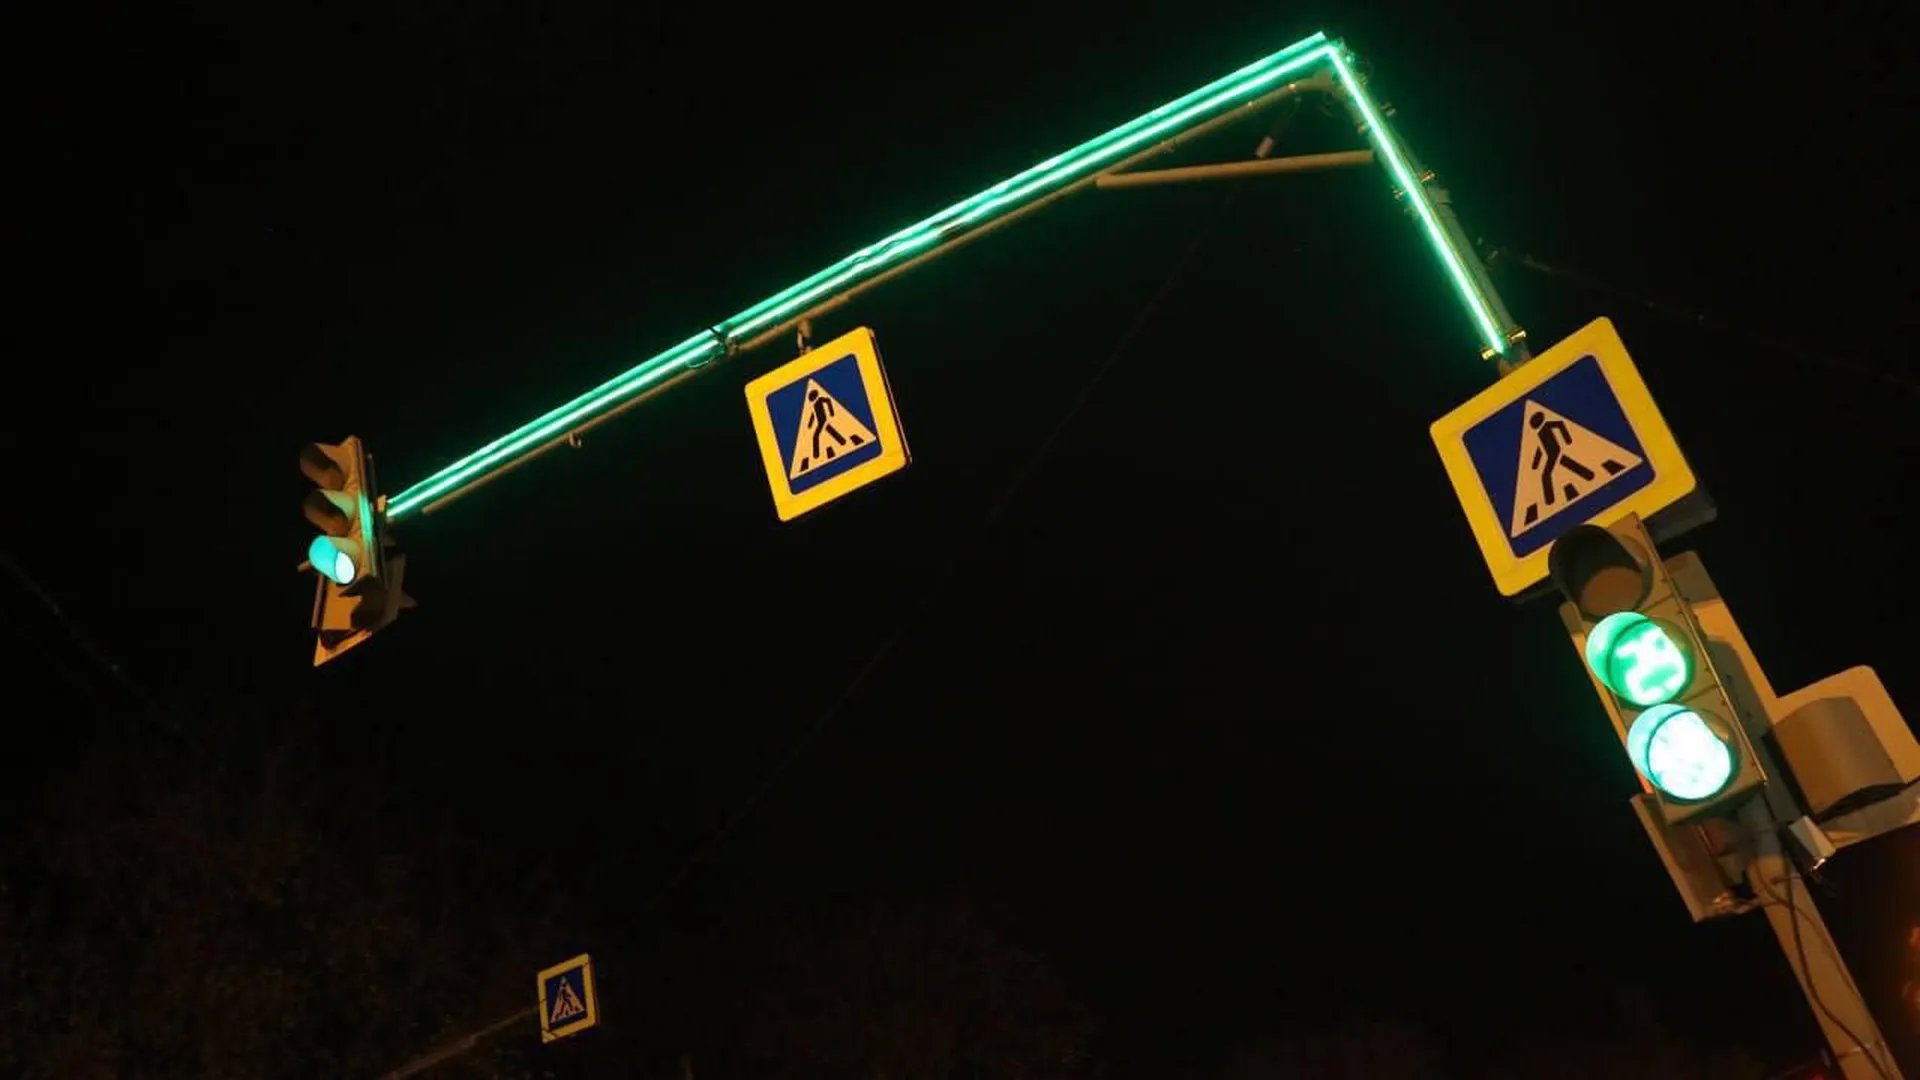 Режим работы семи светофоров скорректировали в Московской области